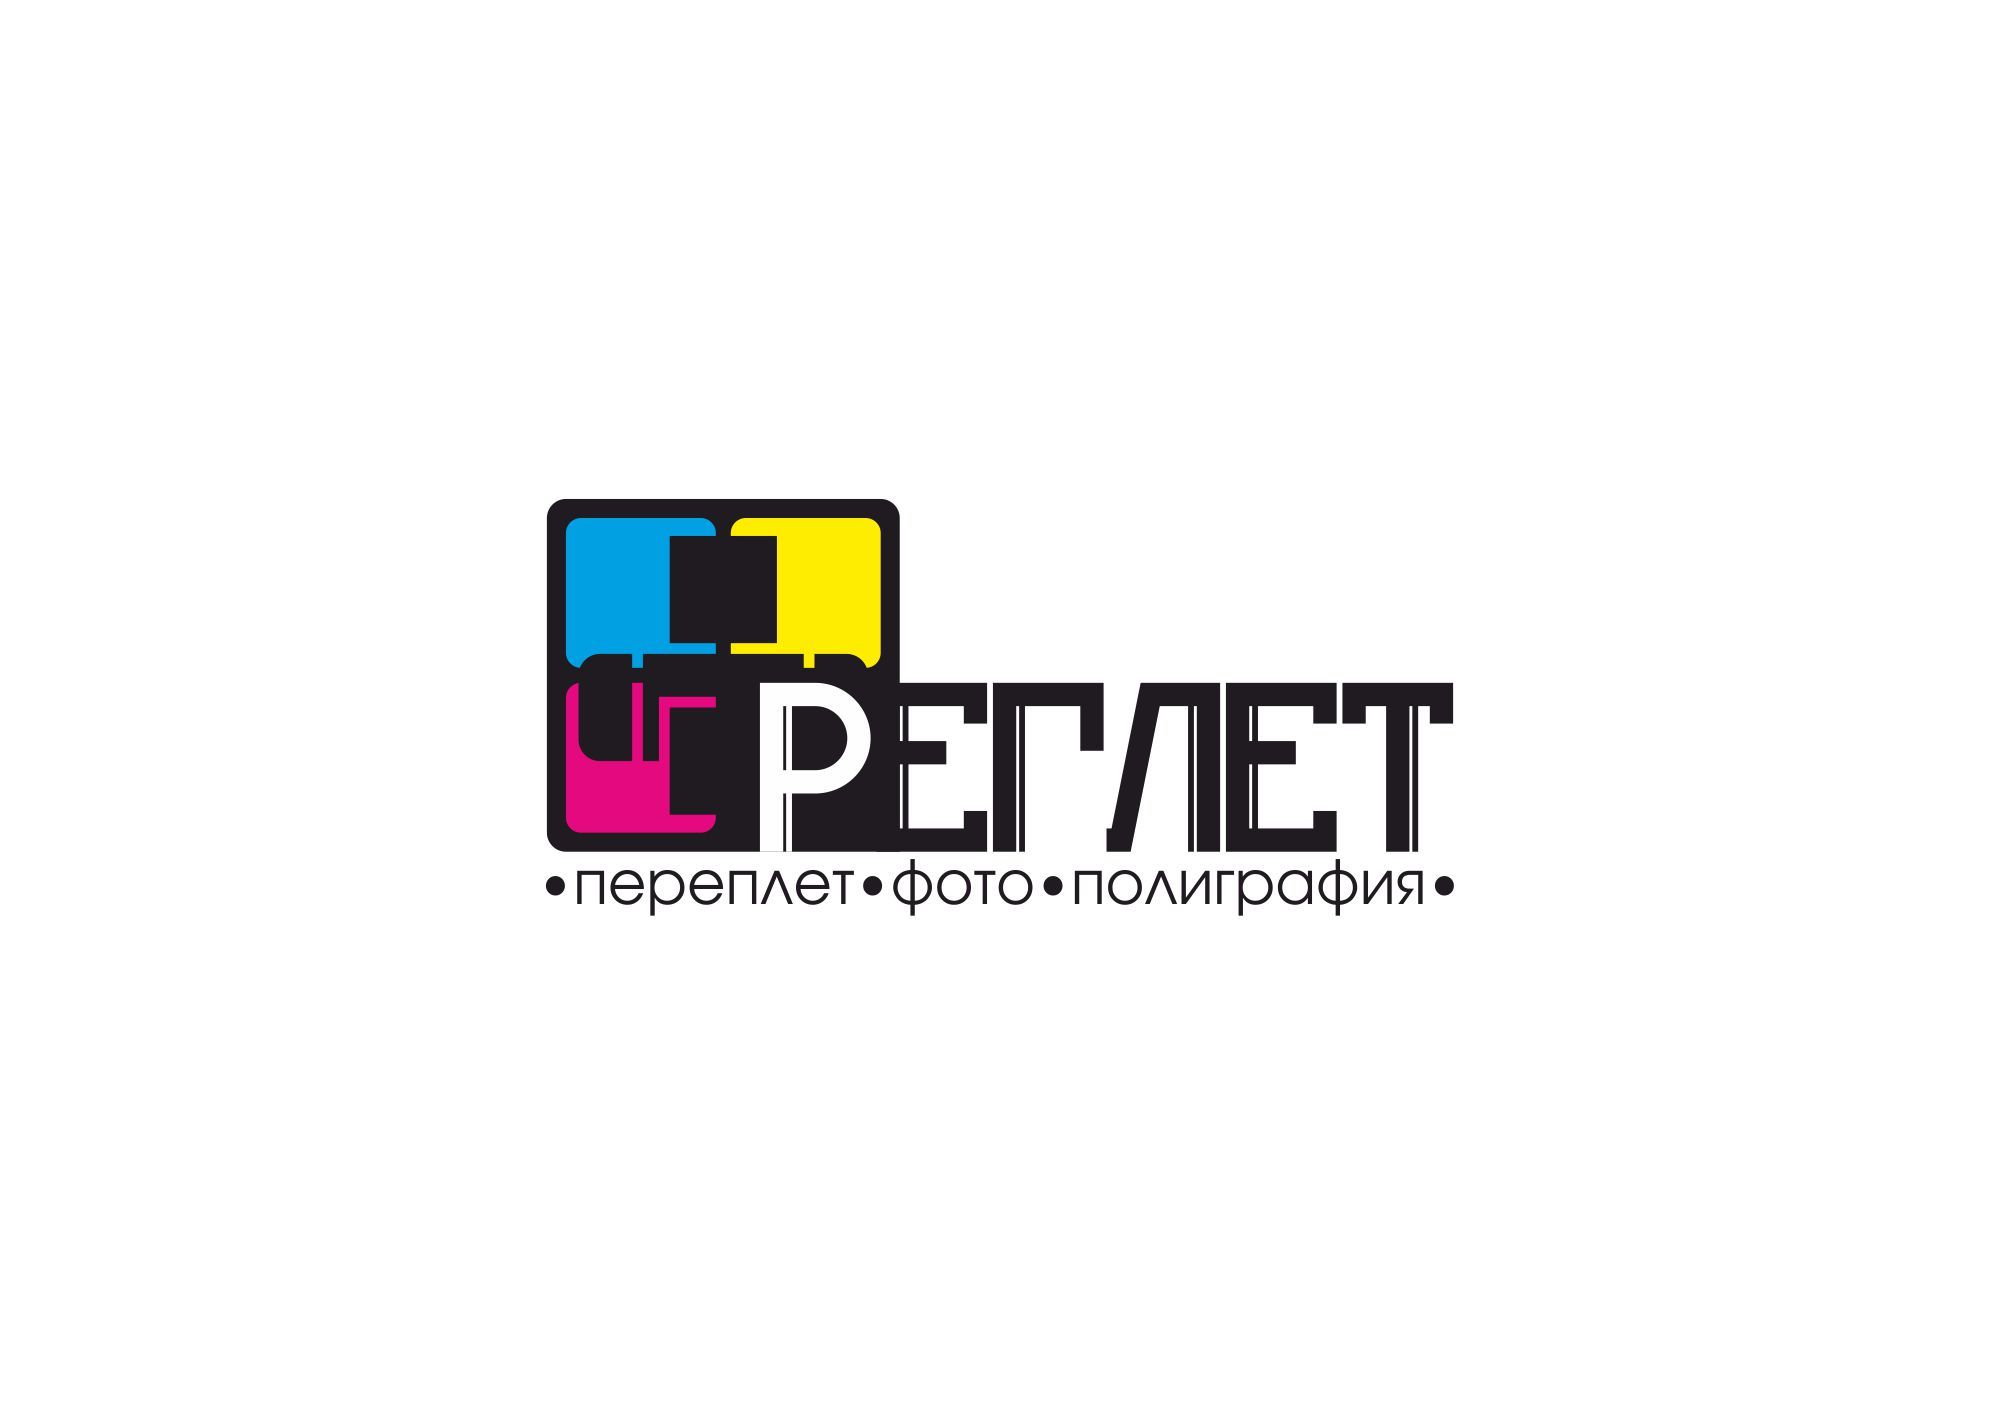 Лого и фирменный стиль для Реглет (сеть копировальных центров) - дизайнер miki1108